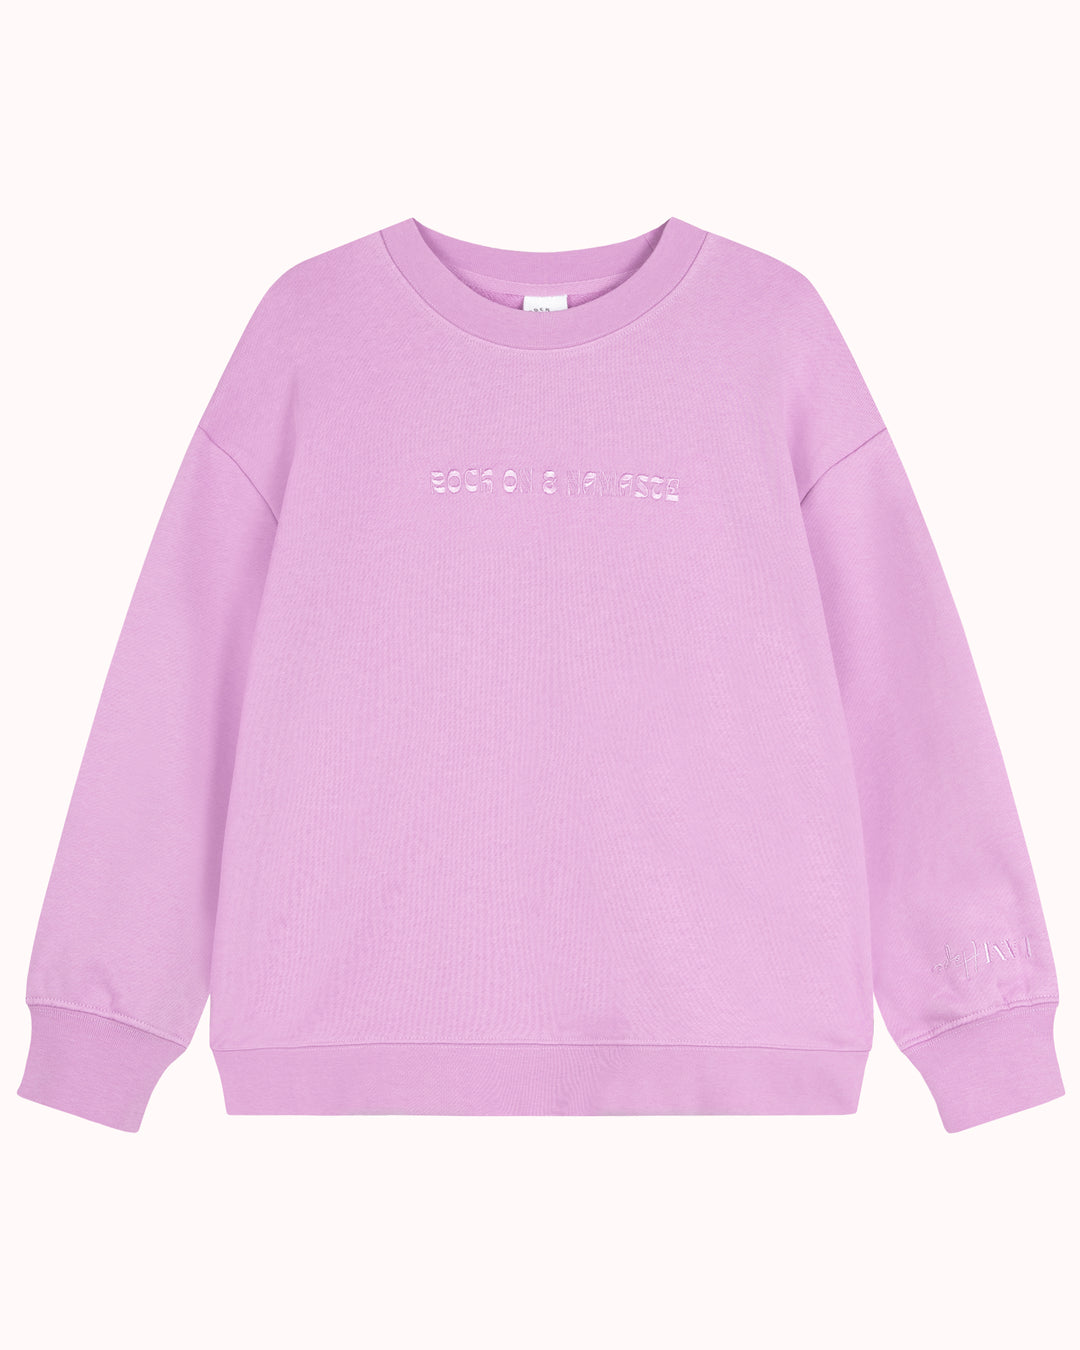 HOPE Sweatshirt (lila)